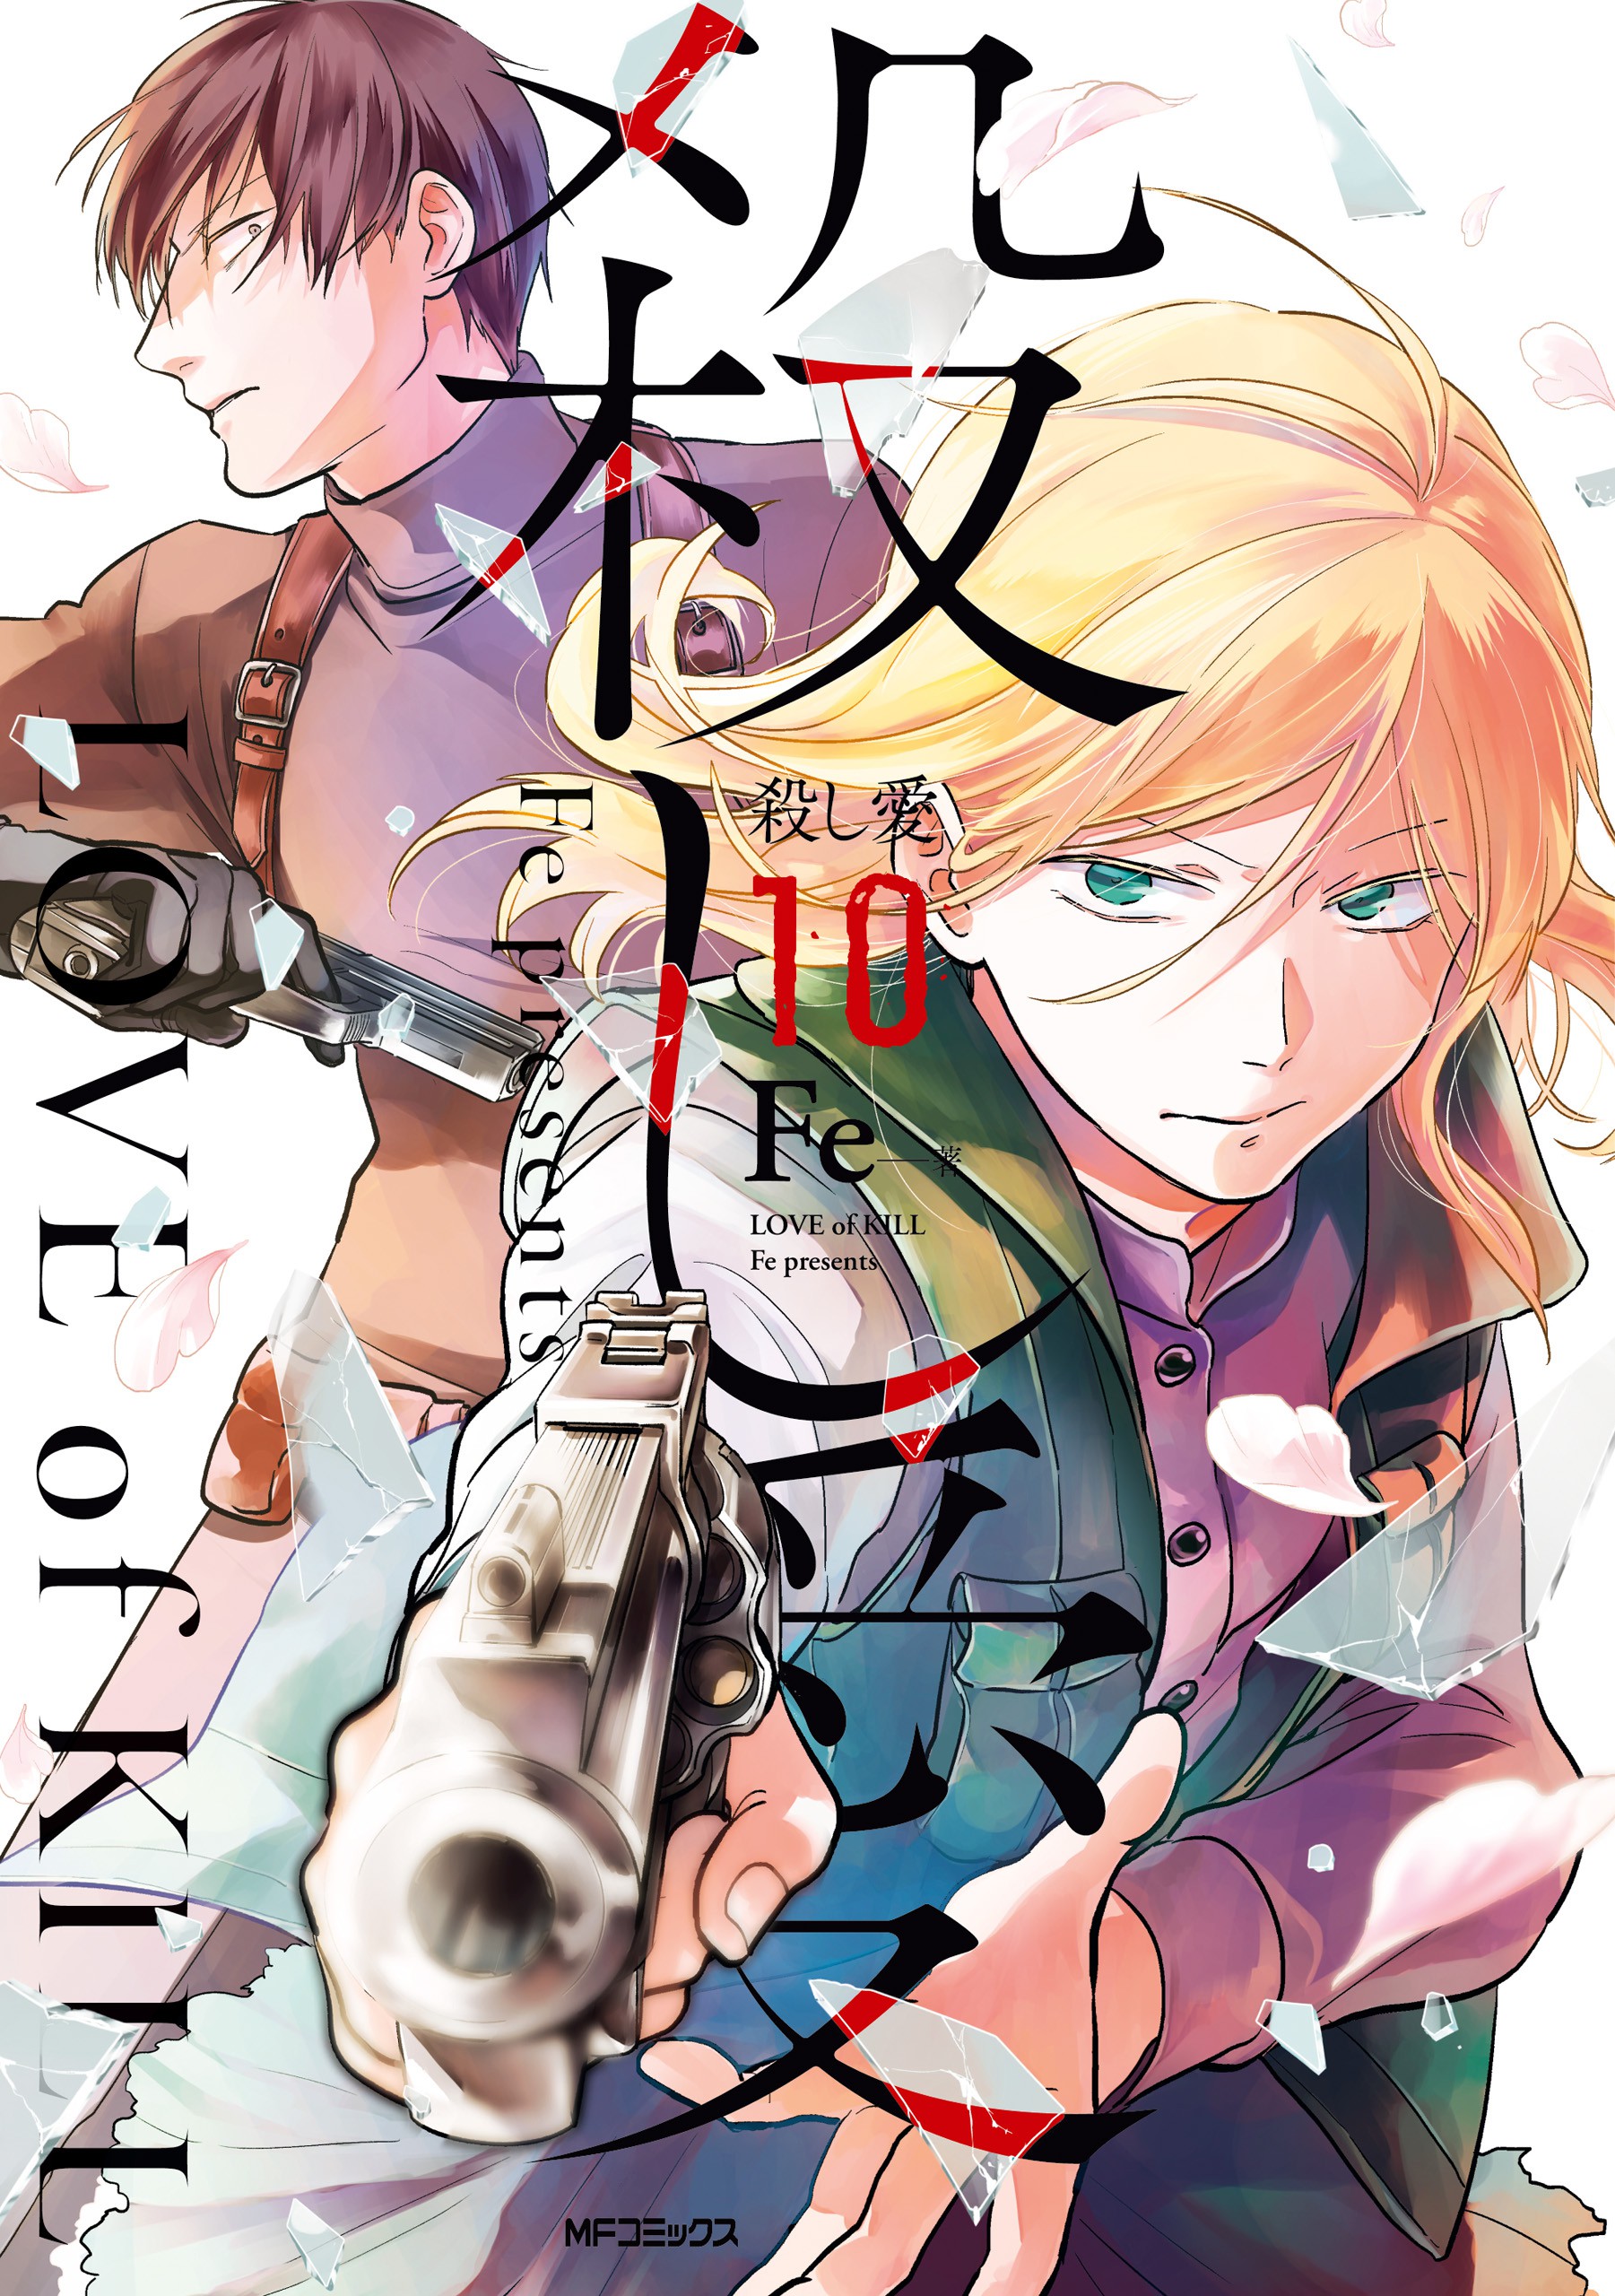 Koroshi Ai Manga Vol 6 - Colaboratory